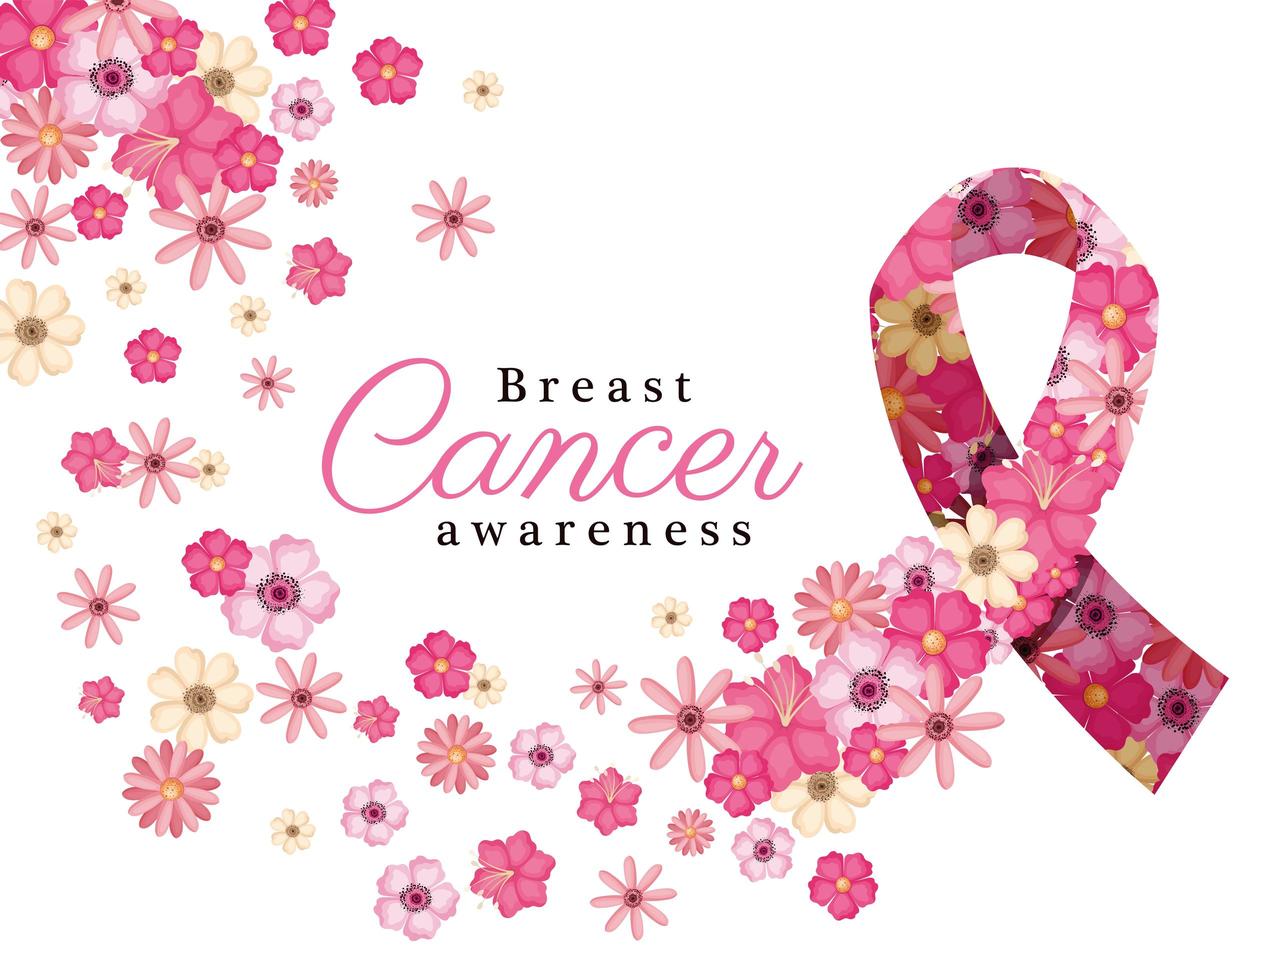 rosa blommor i band för bröstcancermedvetenhetsvektordesign vektor